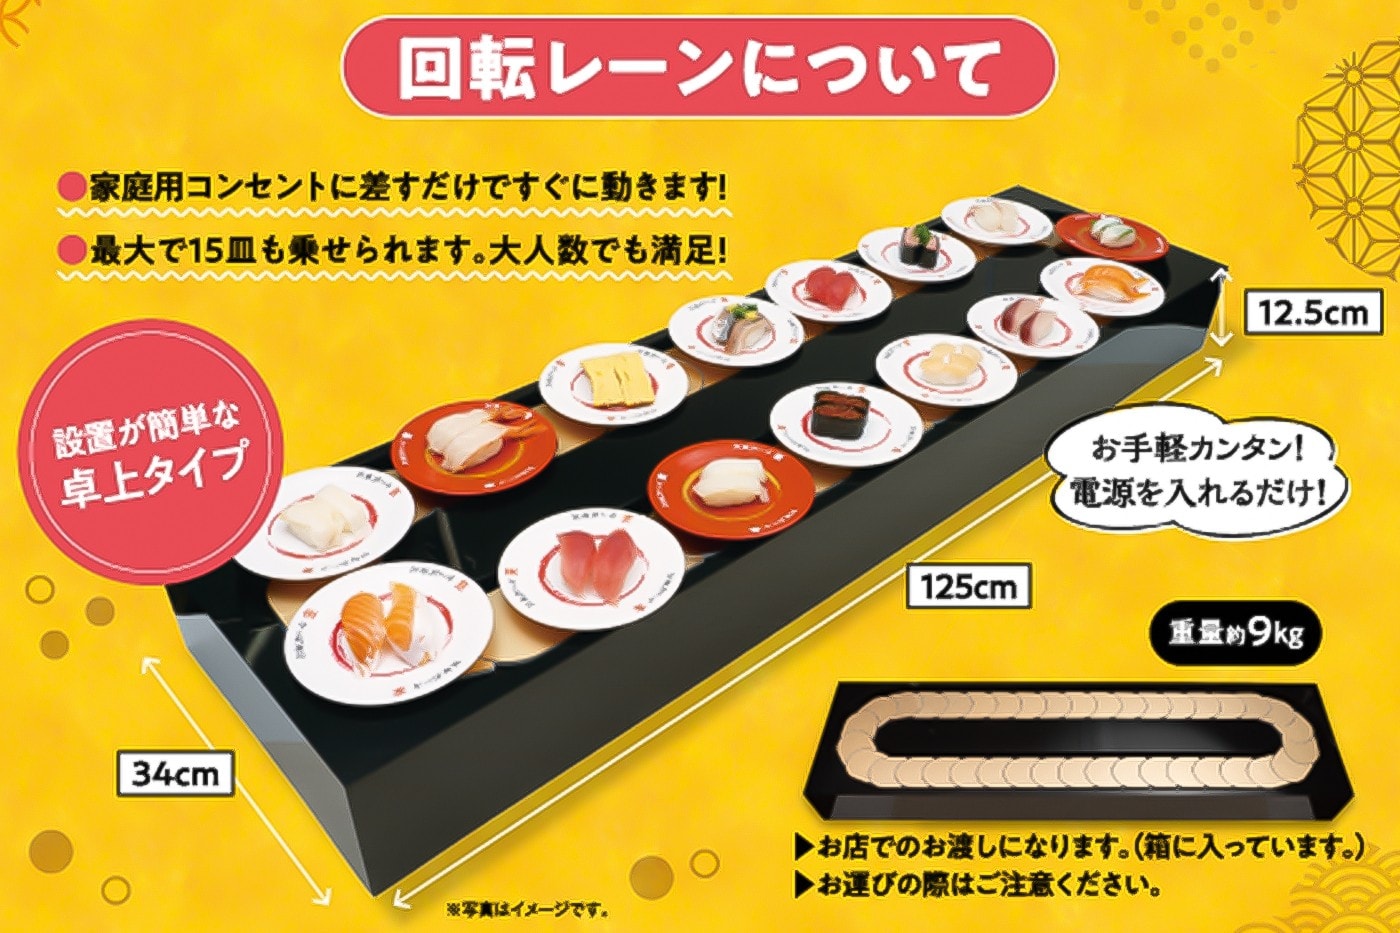 日本連鎖迴轉壽司 Kappa Sushi 推出「出租輸送帶」服務